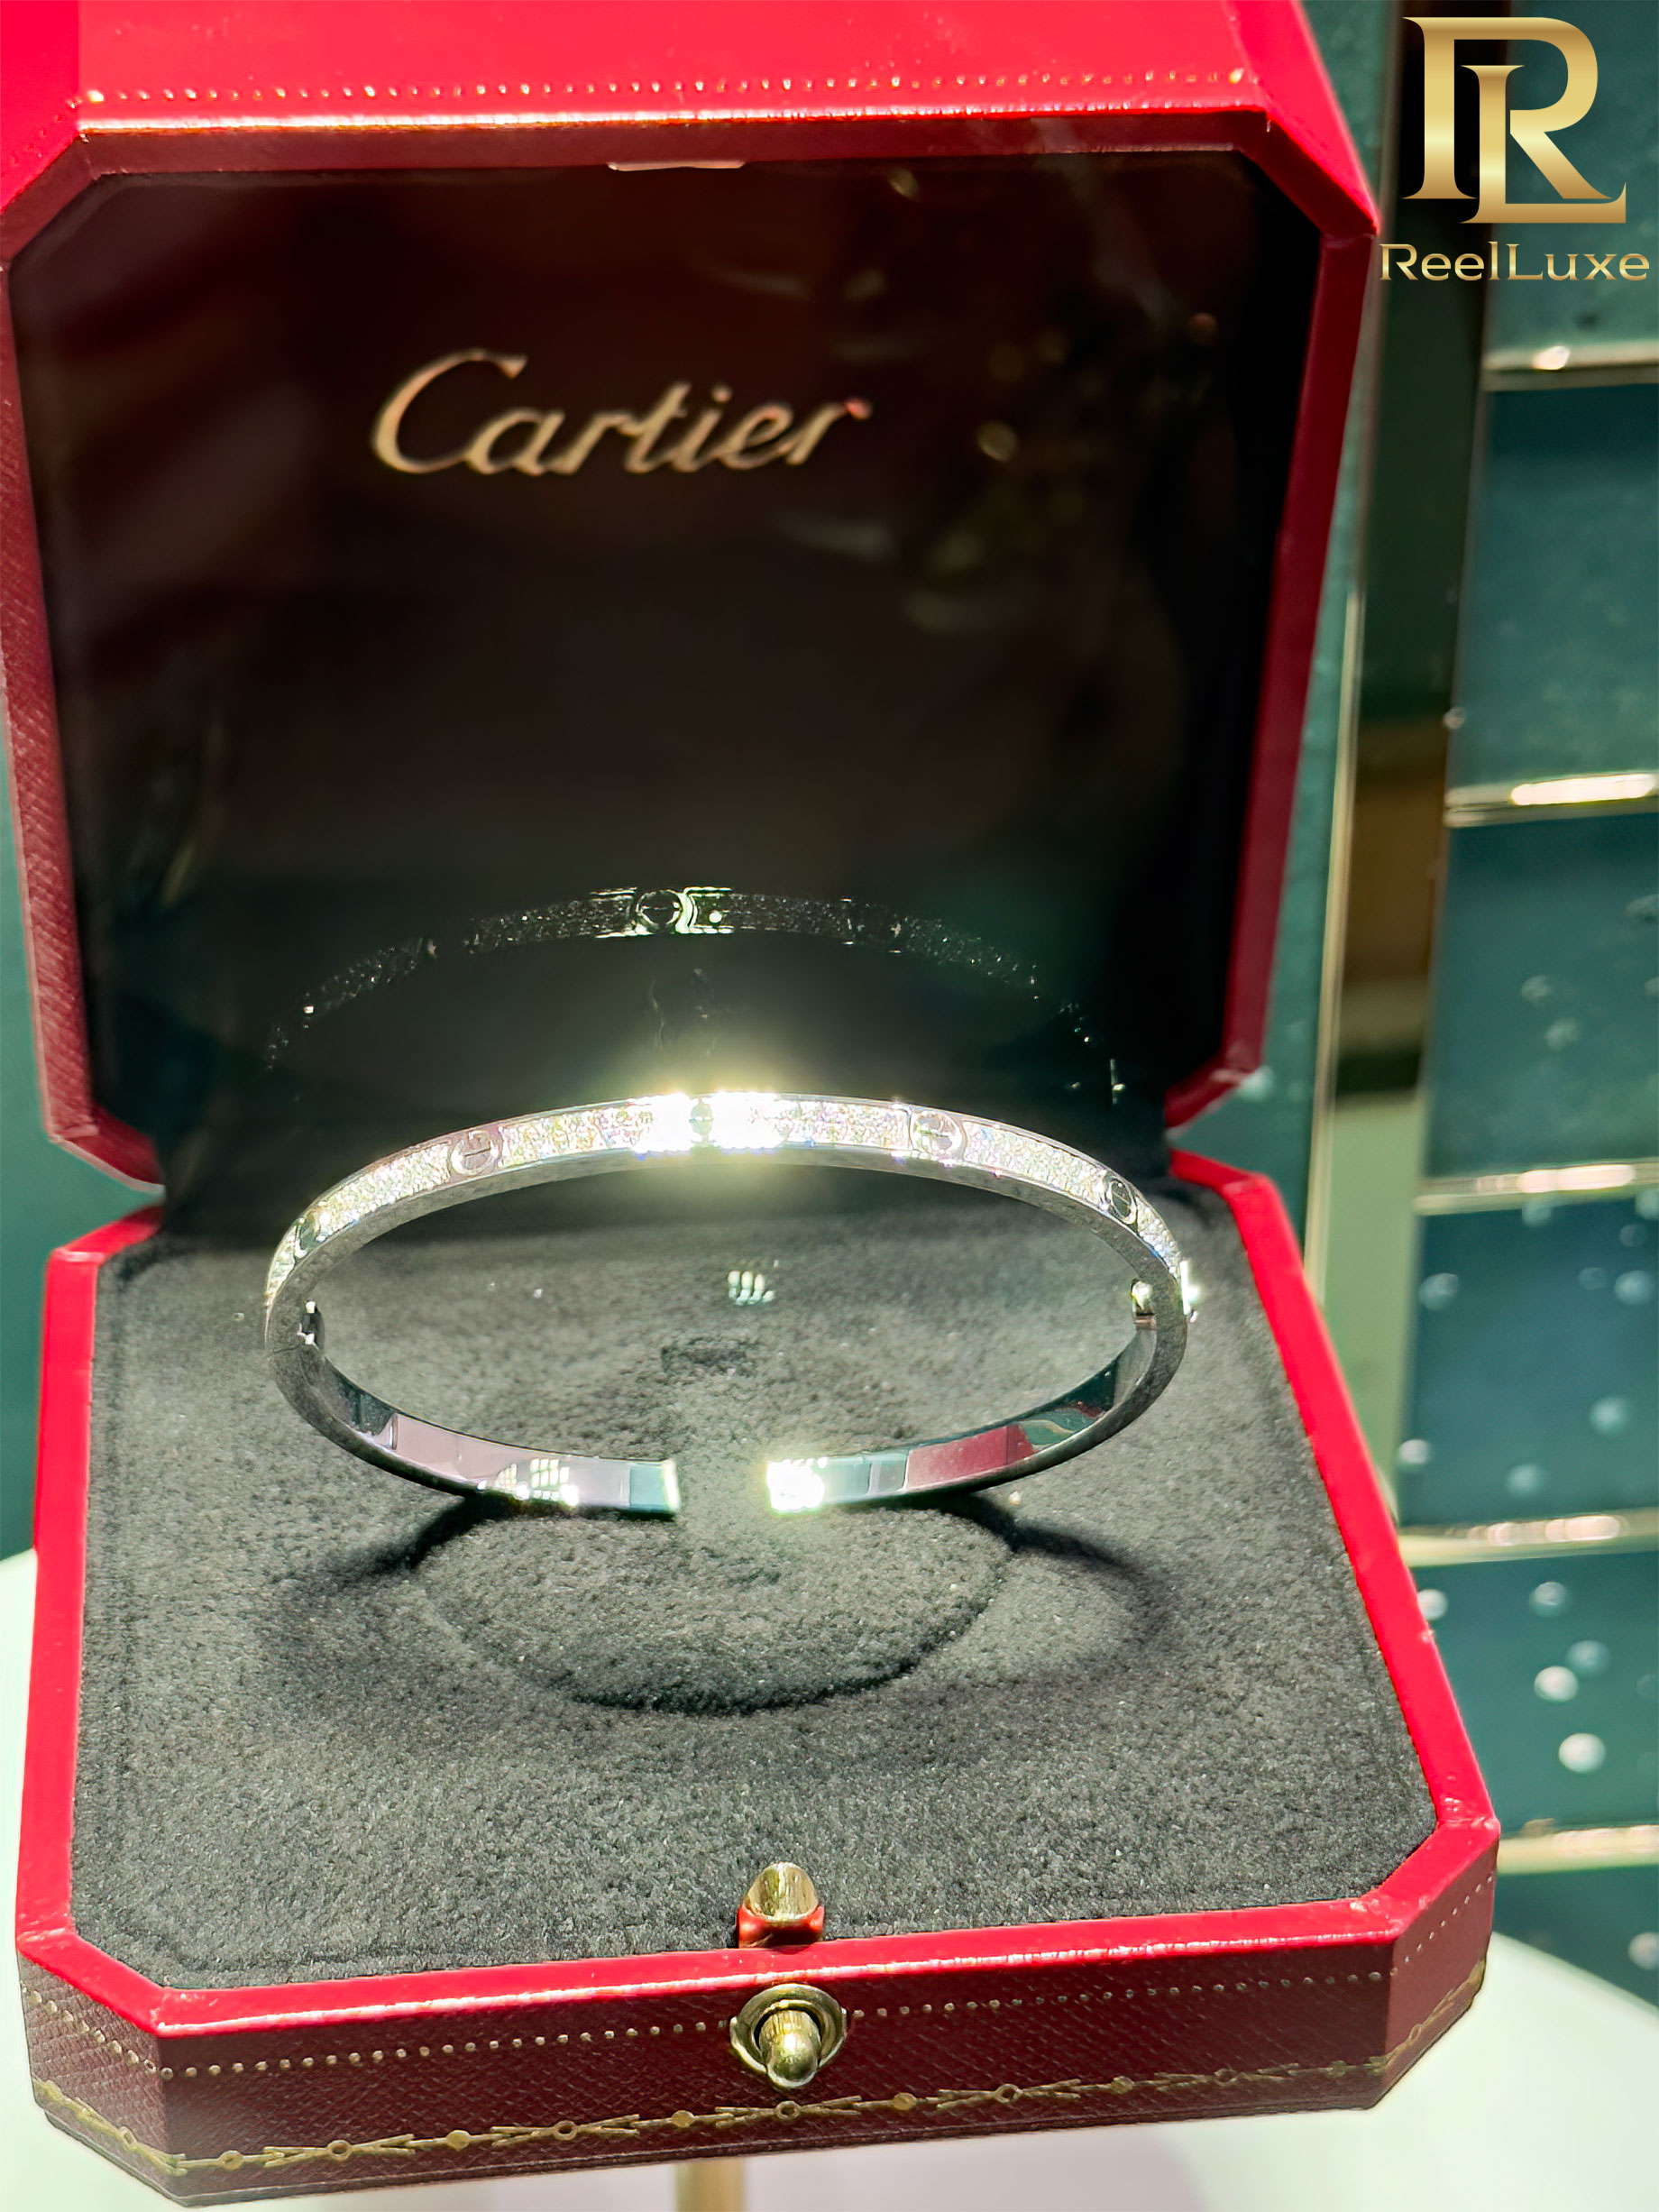 Bracelet LOVE Cartier pavé de diamants, or blanc 18 carats - Boutique Cartier Firenze - Florence, Italie